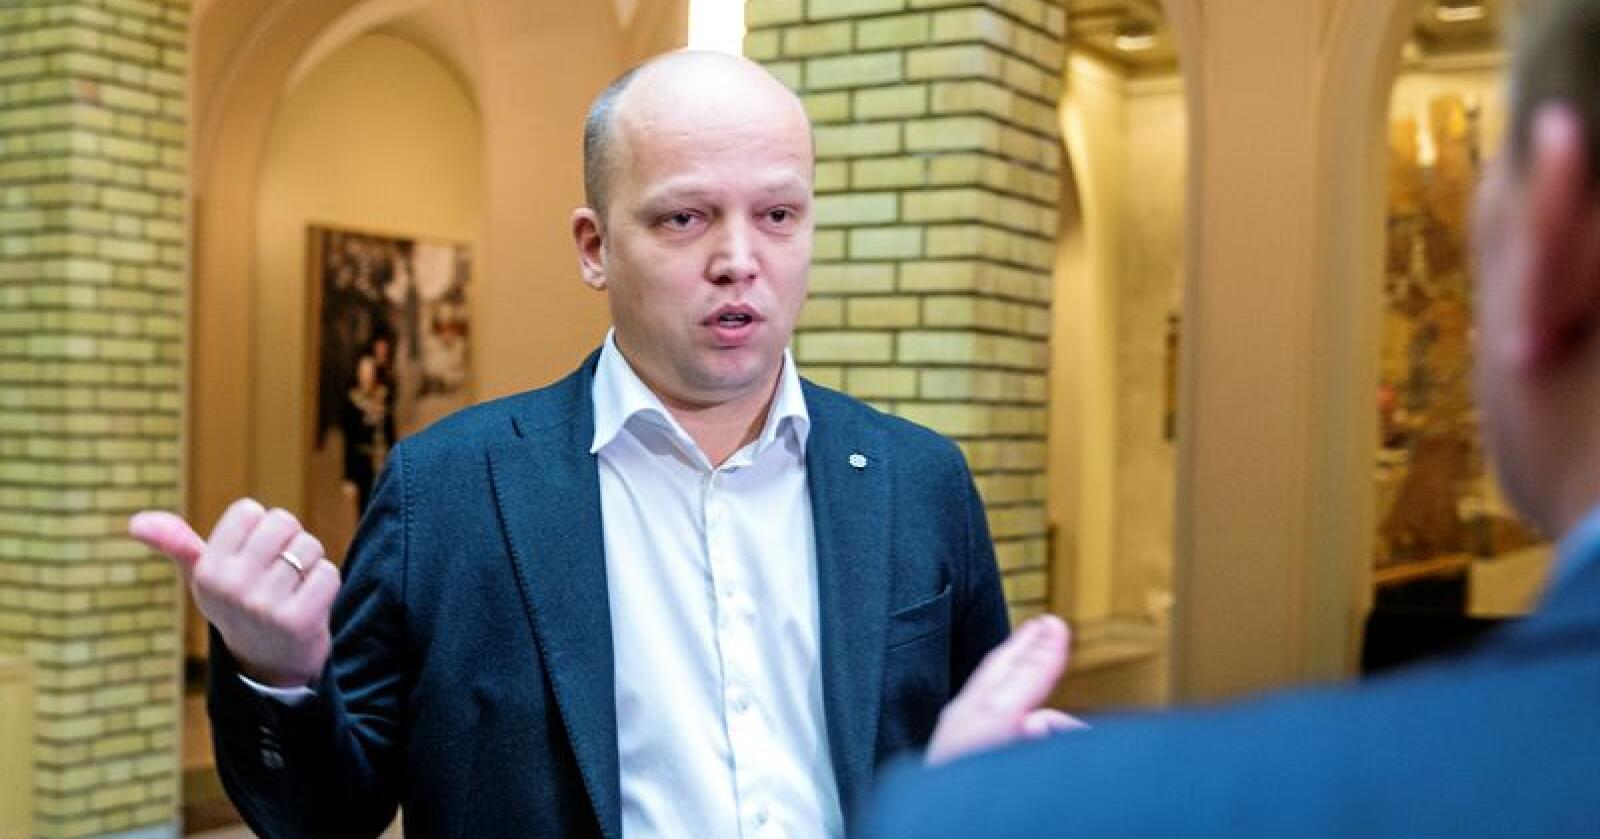 Sp-leder Trygve Slagsvold Vedum angrer ikke på sammenlikningen. Foto: Gorm Kallestad / NTB scanpix